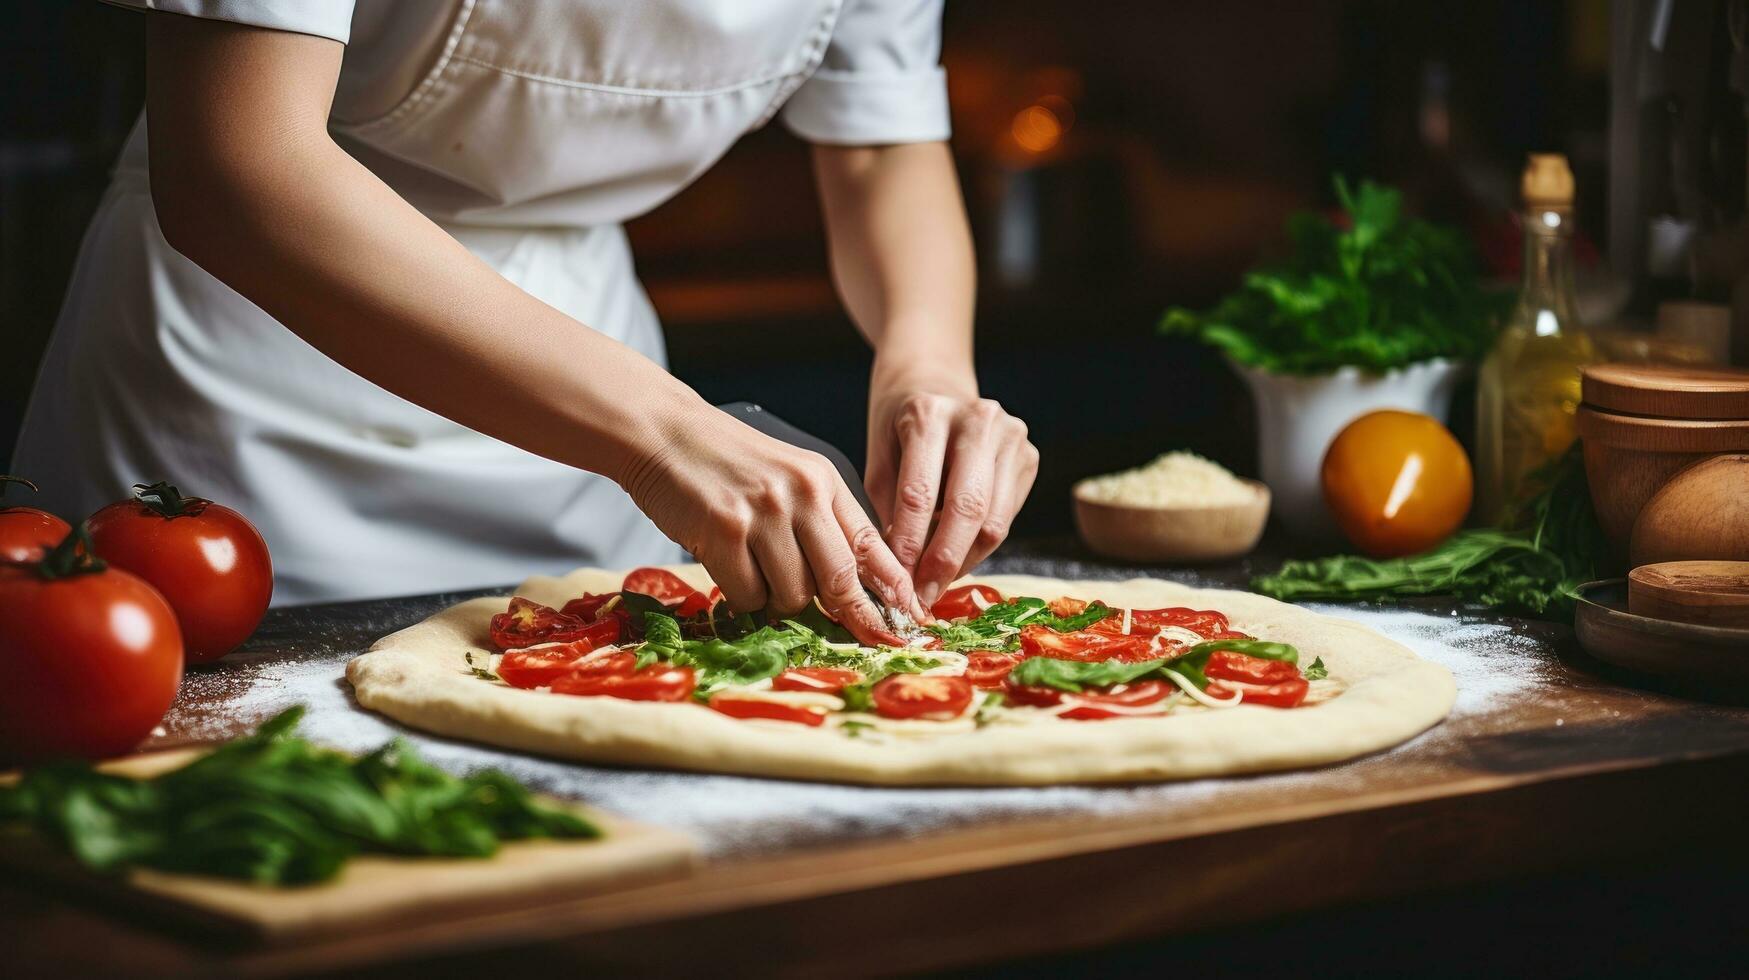 kvinna är matlagning italiensk pizza foto